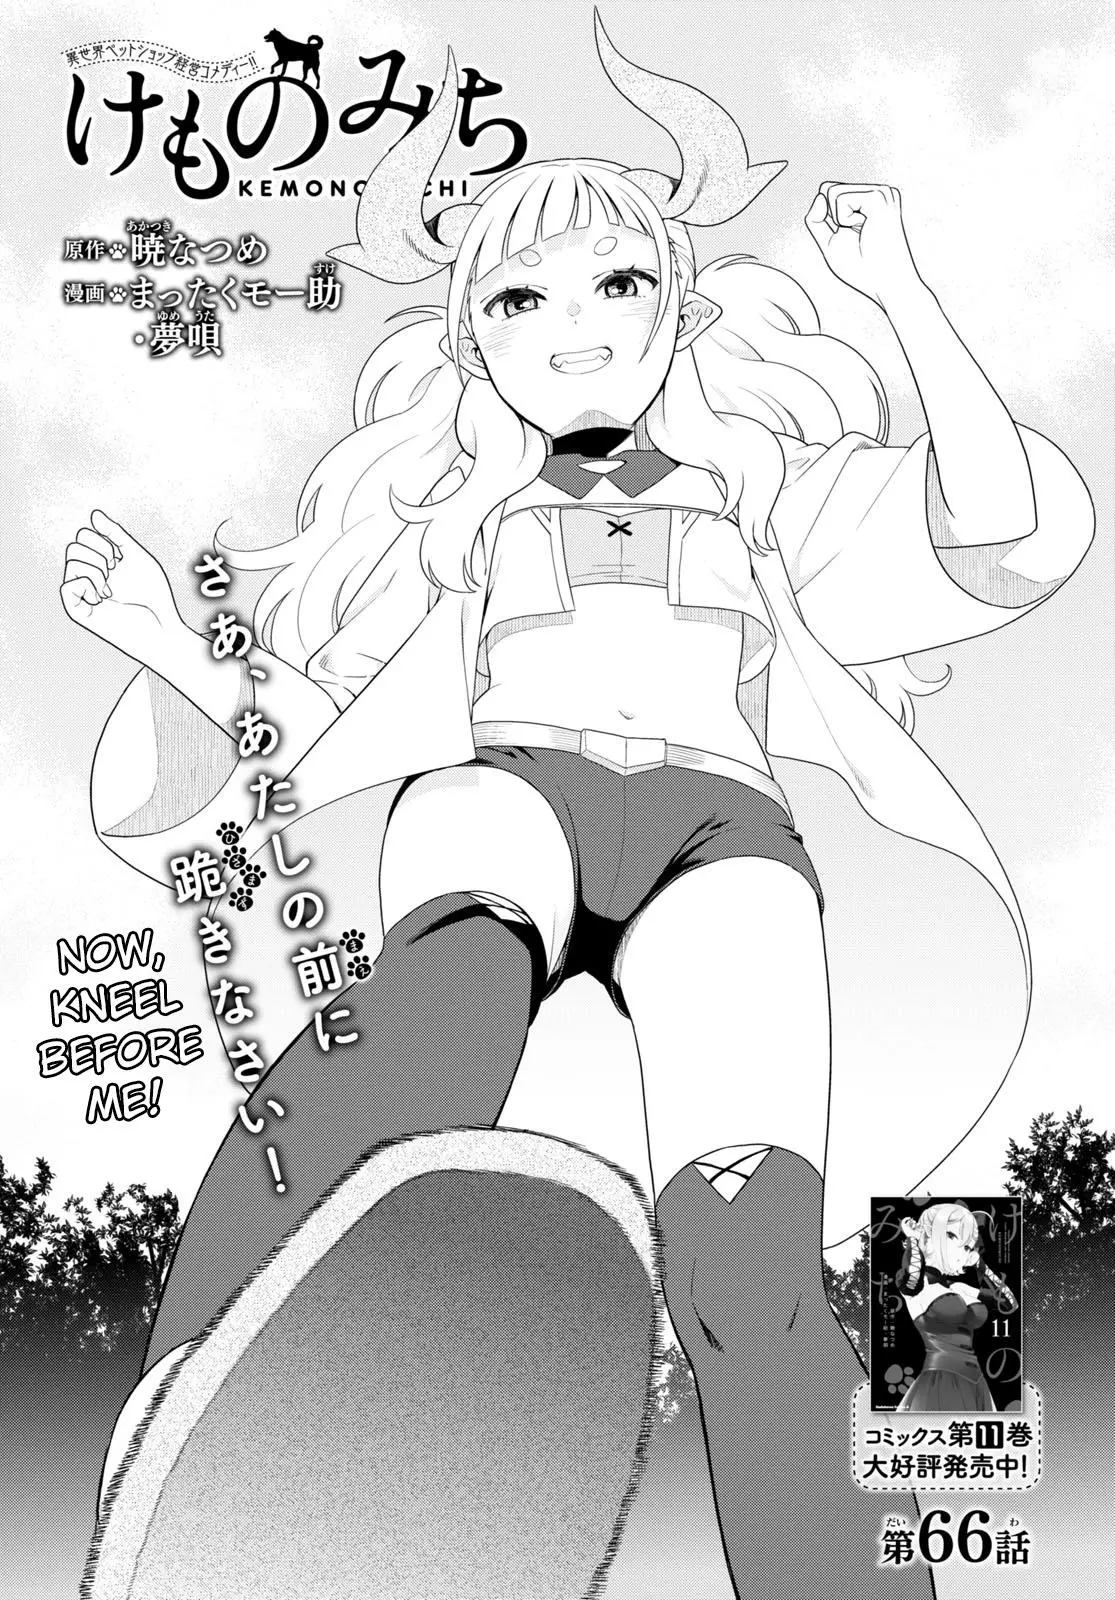 Kemono Michi (Natsume Akatsuki) Manga 